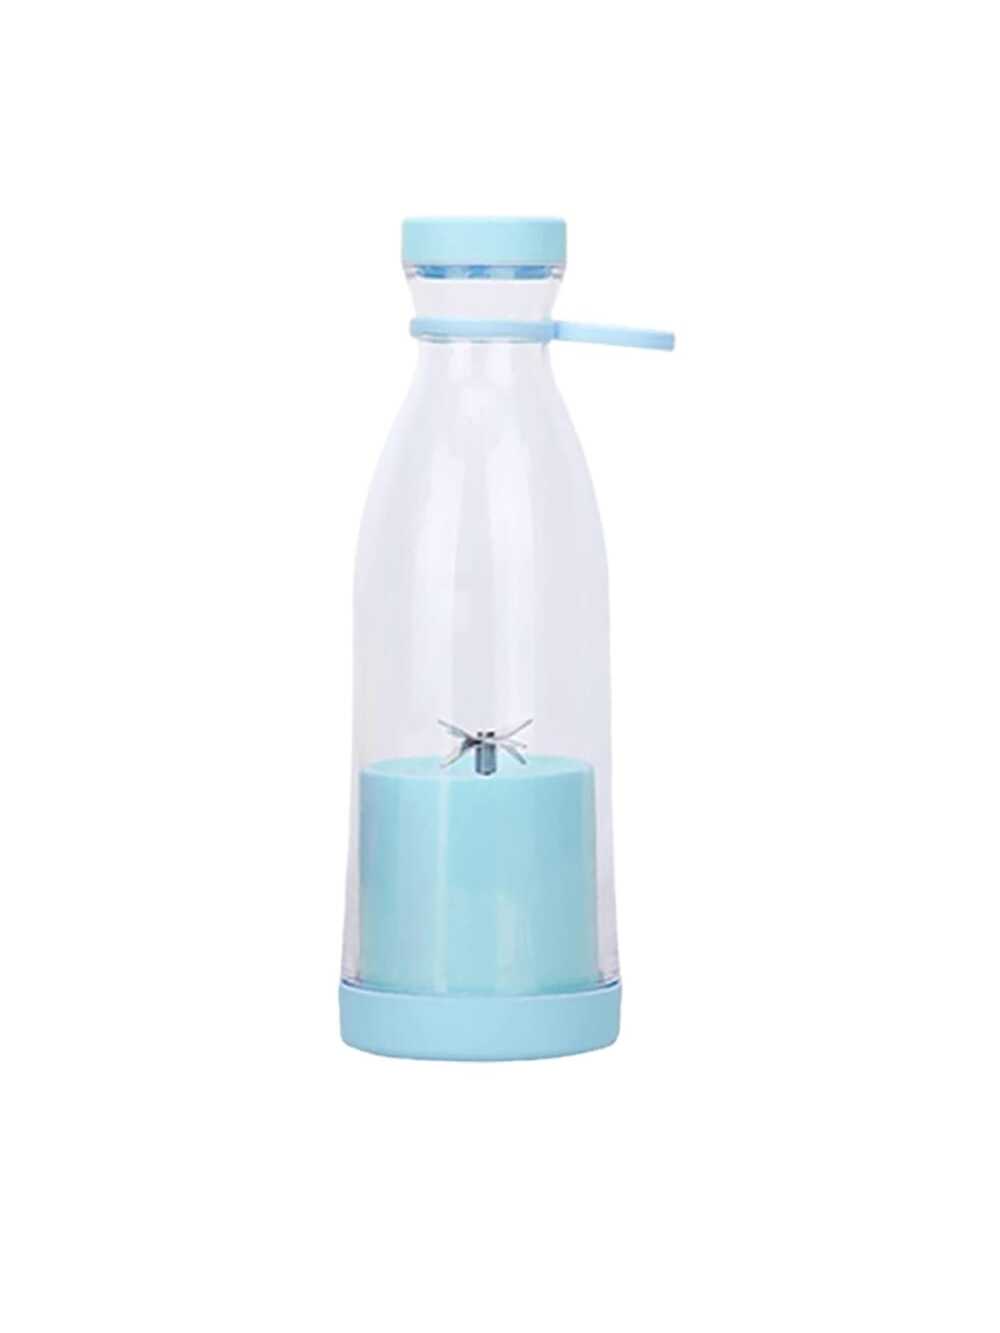 1pc Blue Portable Rechargeable Electric Juice Cup - Bottle Style, 6 Blades, Mini Portable Blender Cup Suitable For Home/office Etc. Rechargeable Portable, Quiet Noise Reduction-Blue-1